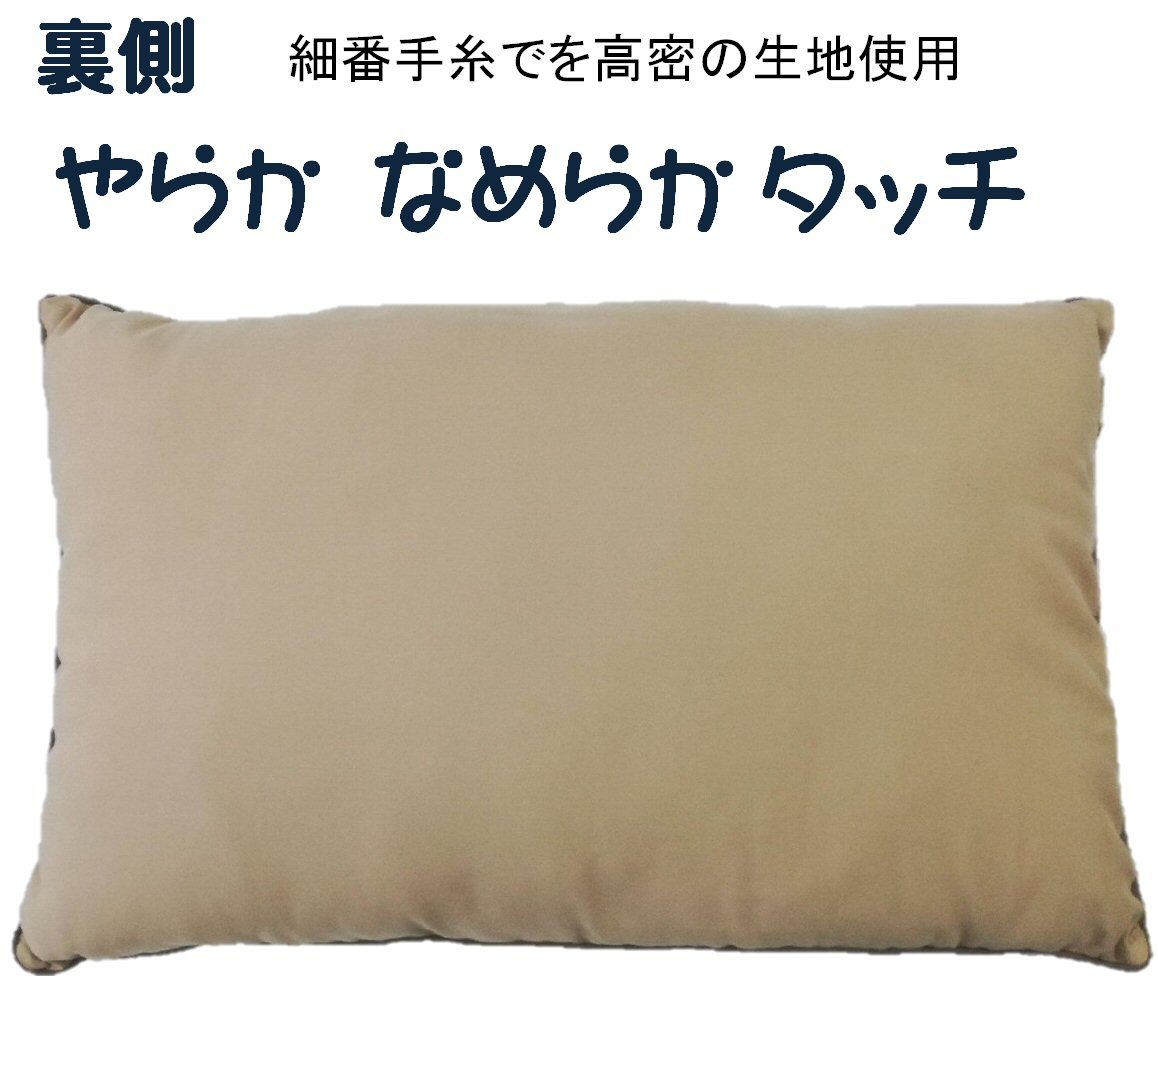 ホテル仕様枕 43×63cm マイクロポリエステル綿仕様 《滑らかな綿がすっぽり頭を覆う》